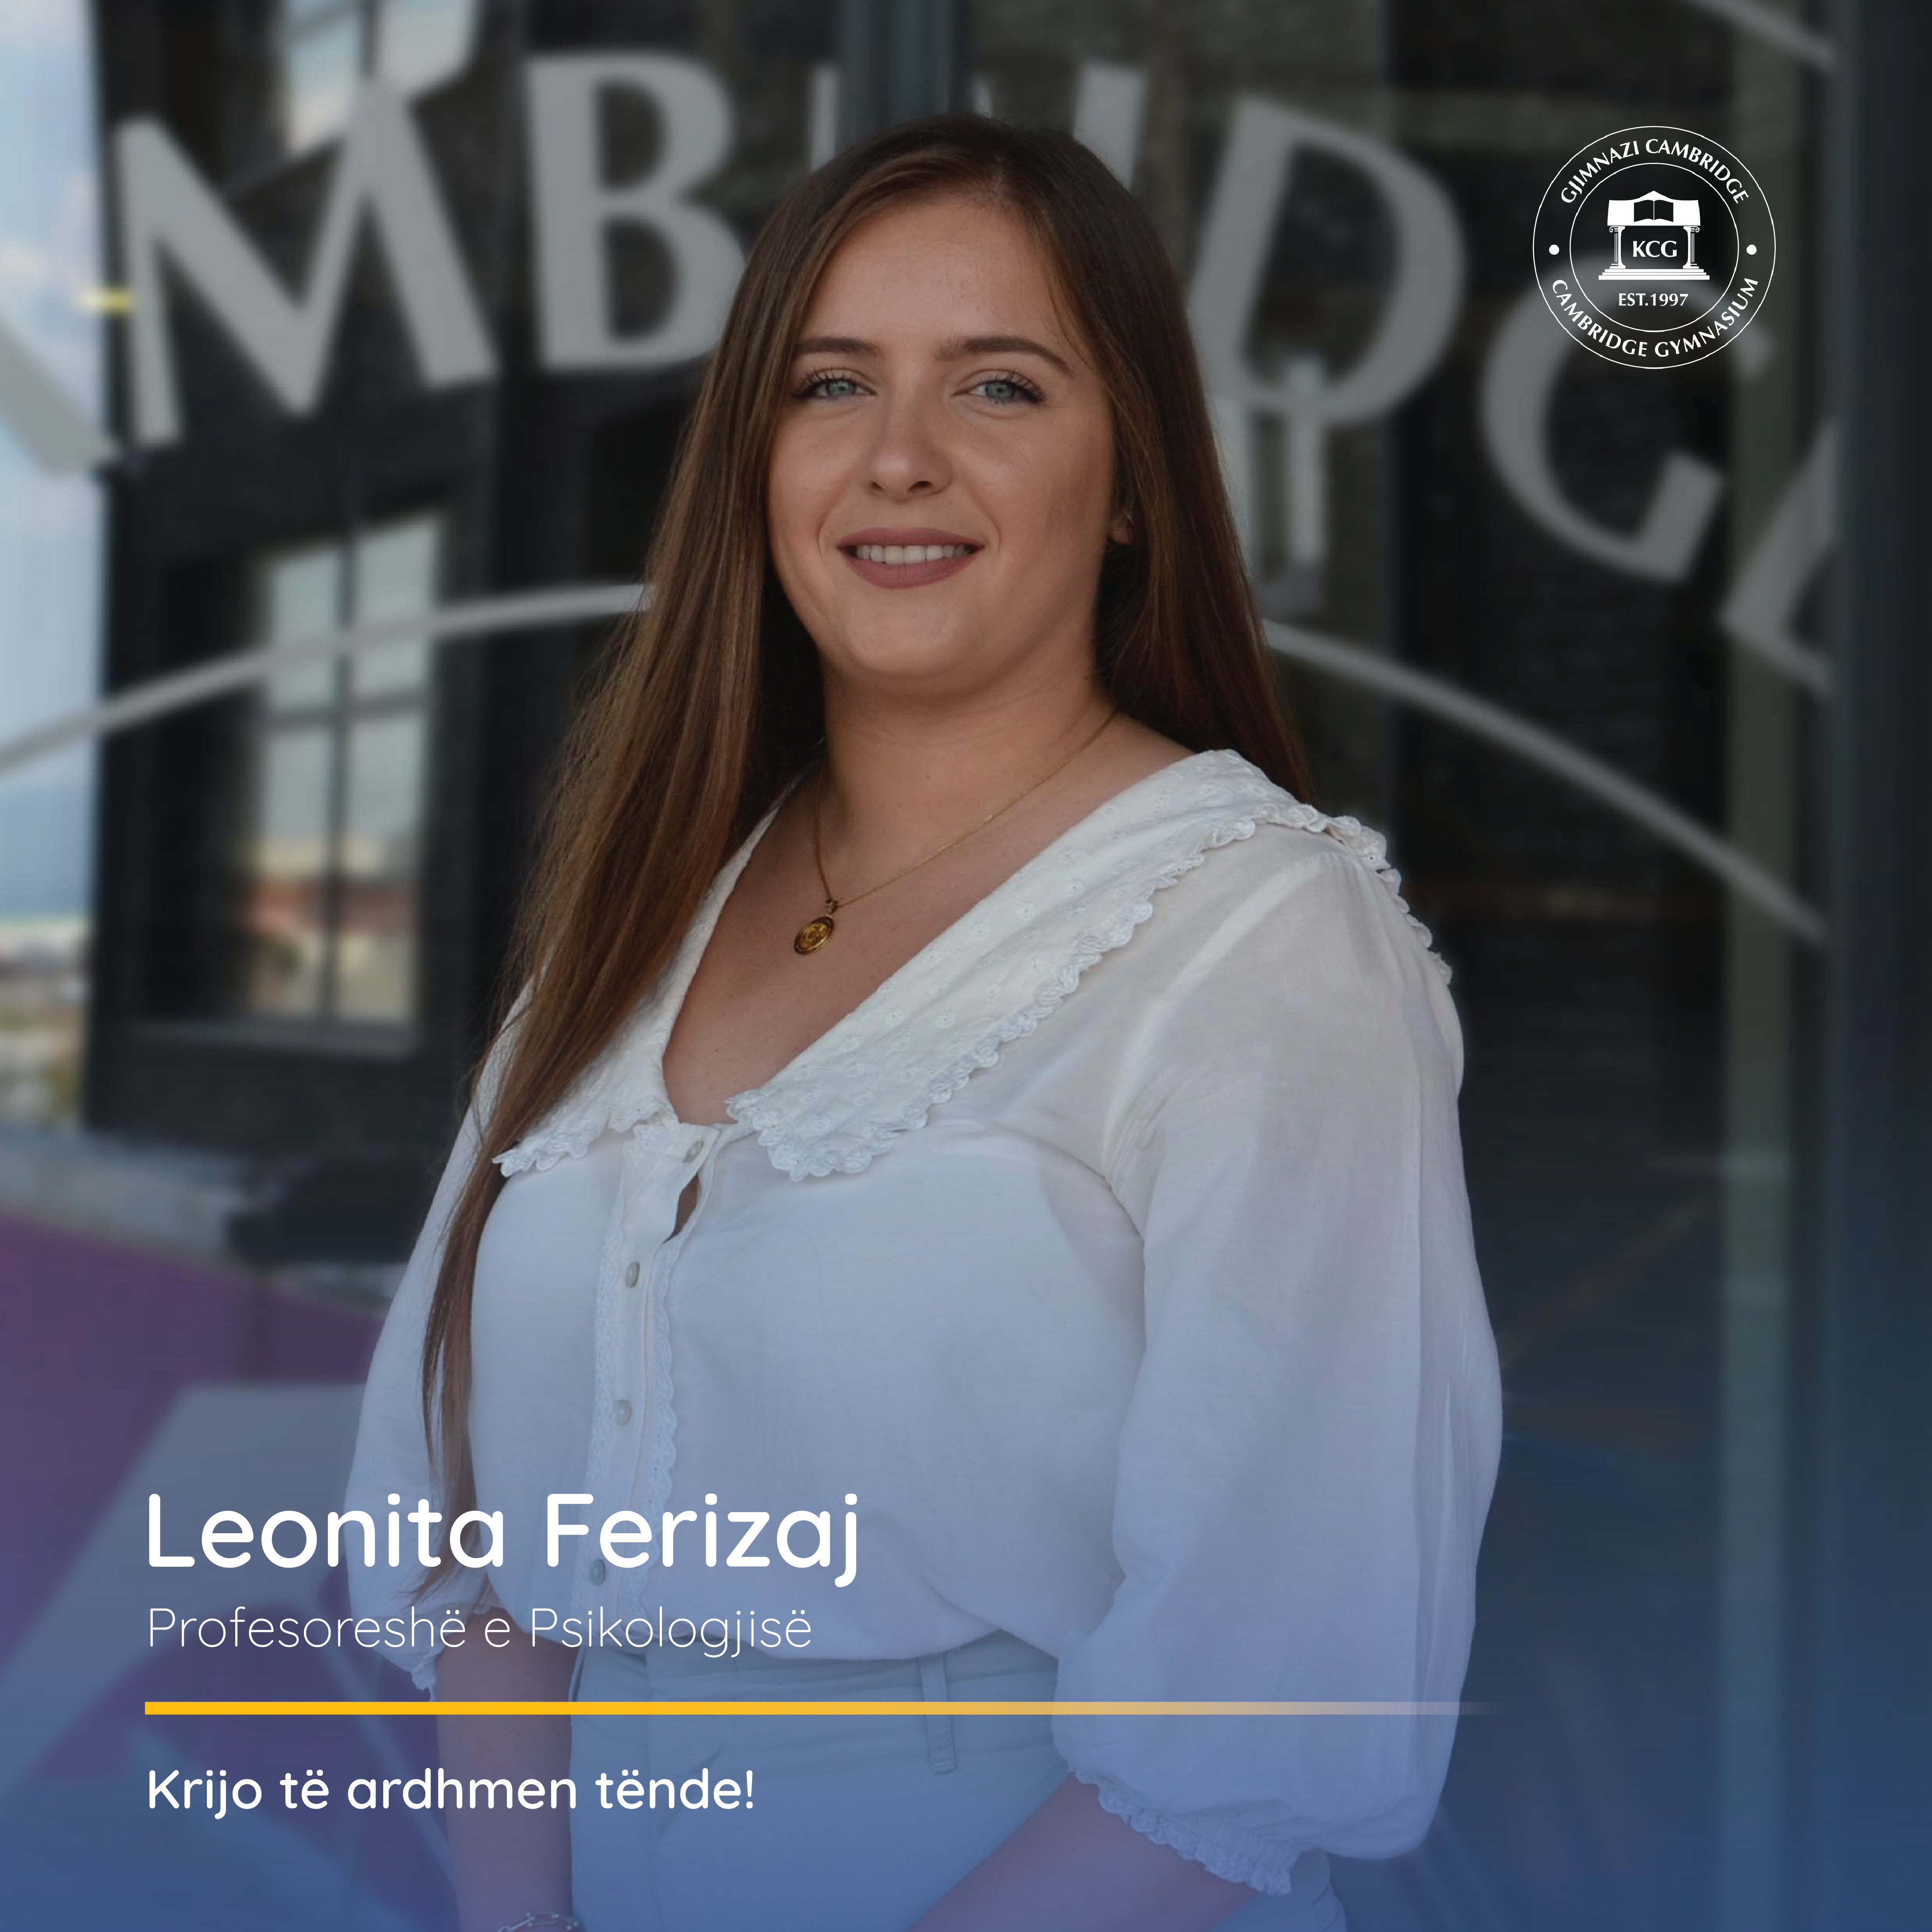 Leonita Ferizaj